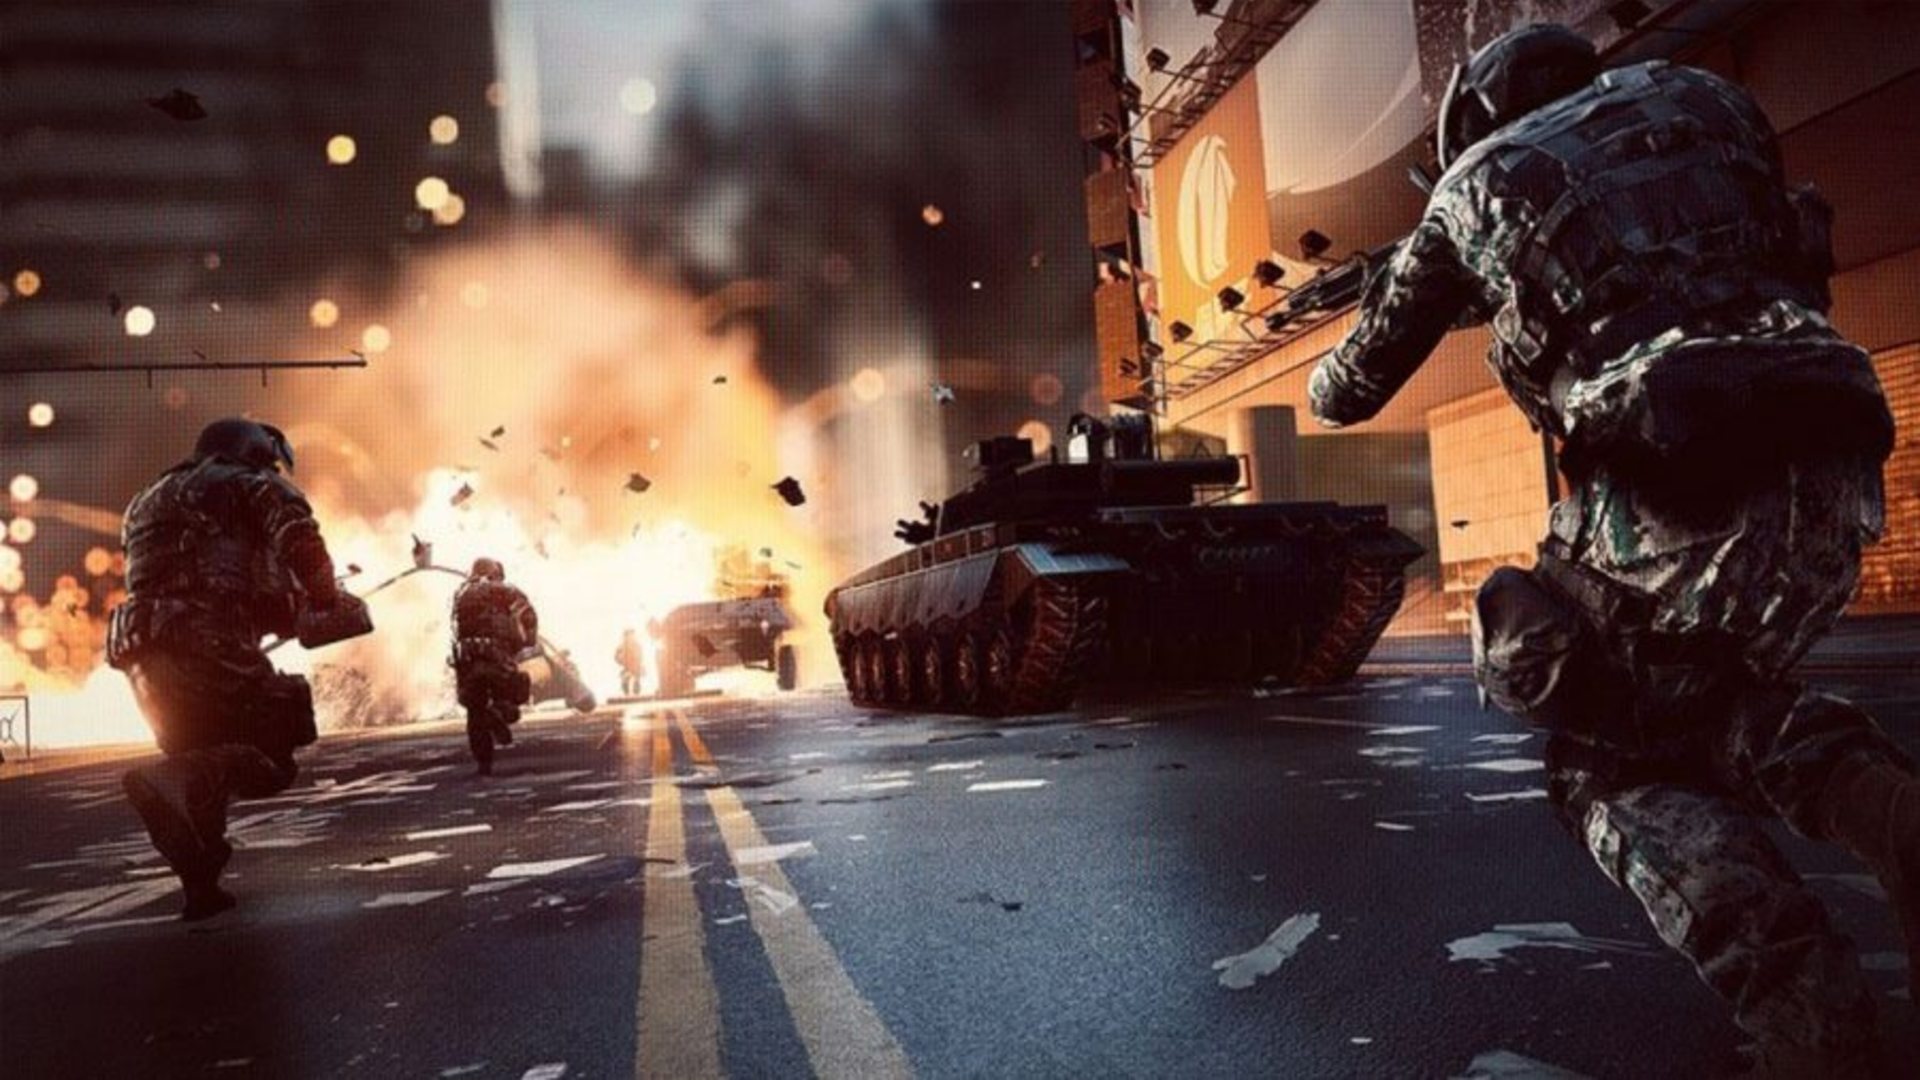 Beste tankspellen: Battlefield 2042. Afbeelding toont soldaten en tanks in de straten van de stad. Ook is er een explosie